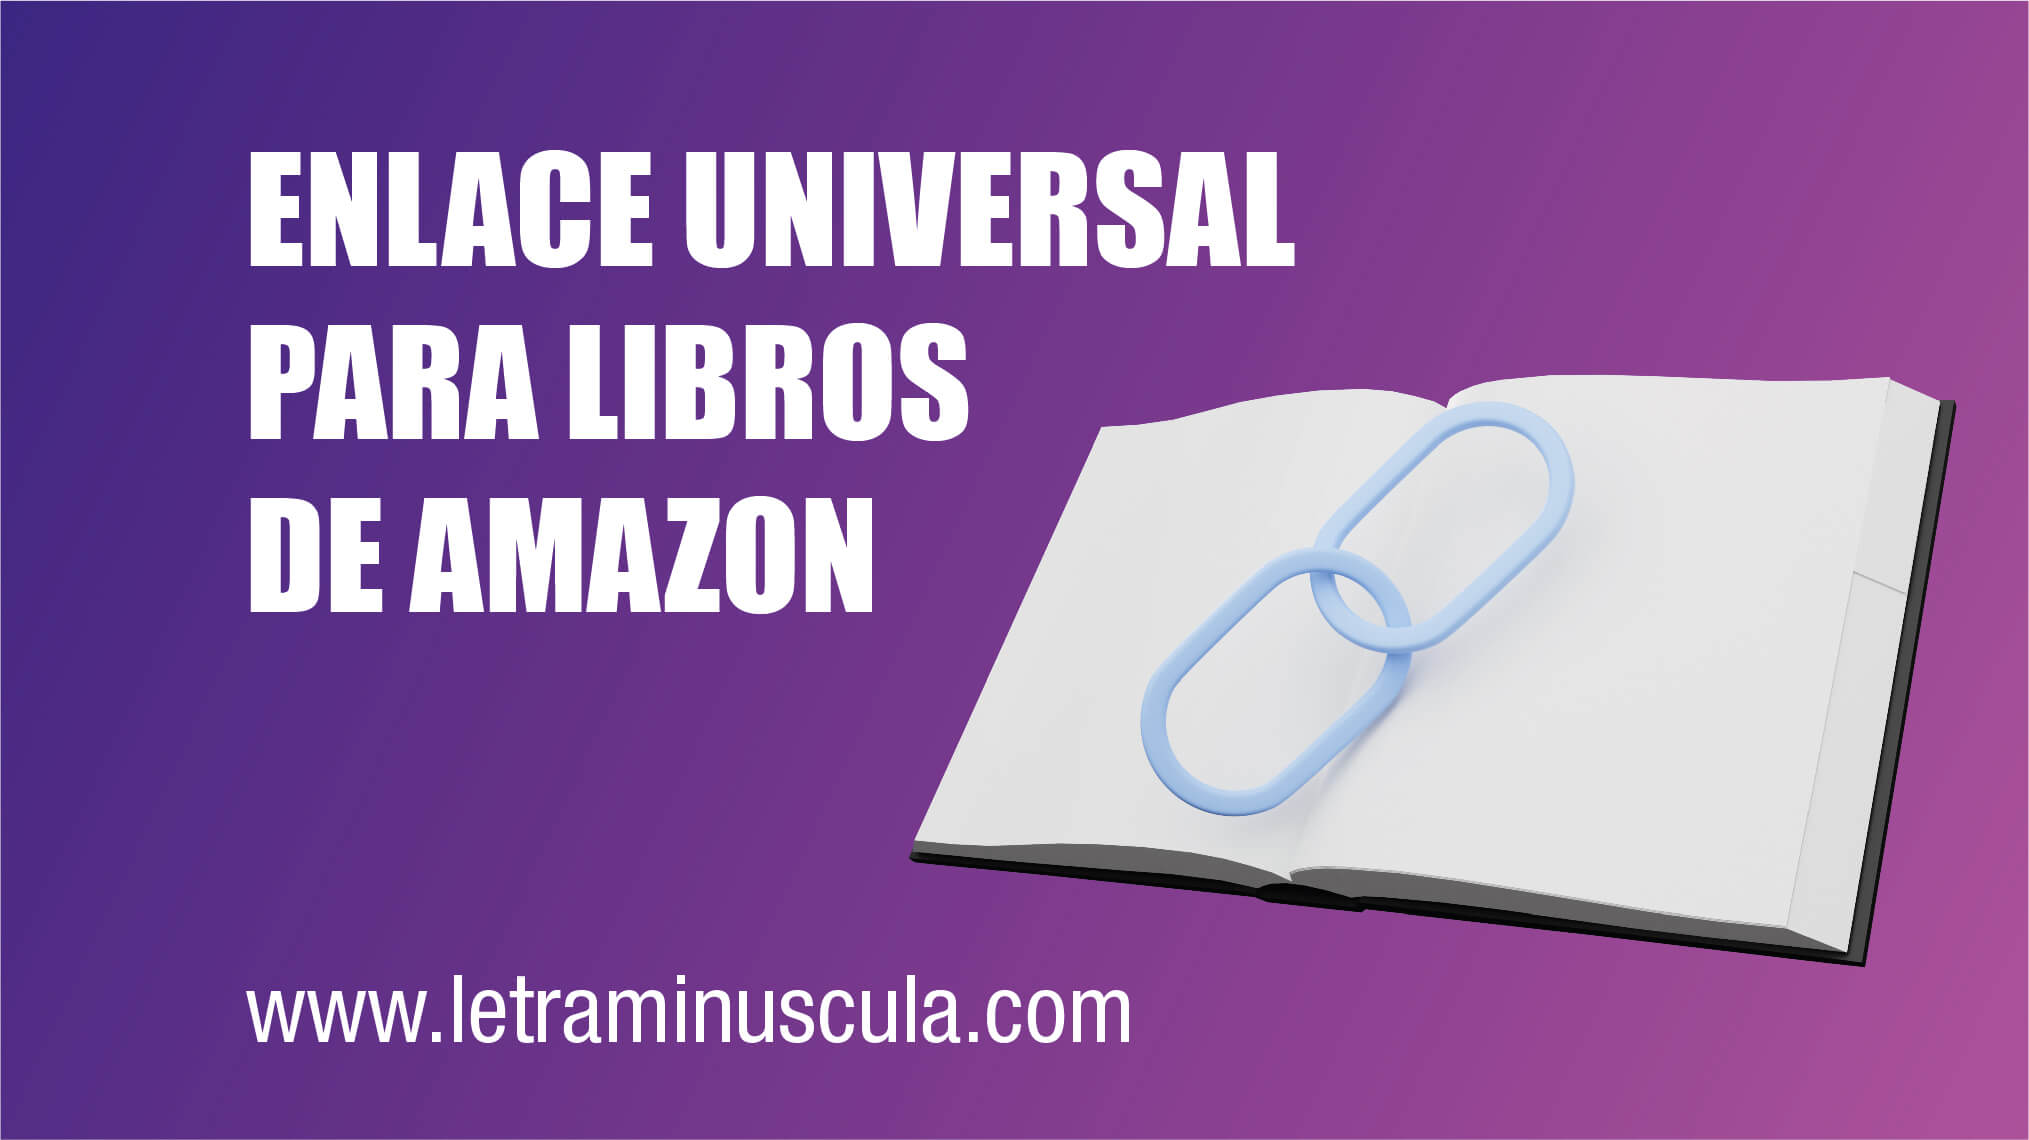 ENLACE UNIVERSAL PARA LIBROS DE AMAZON